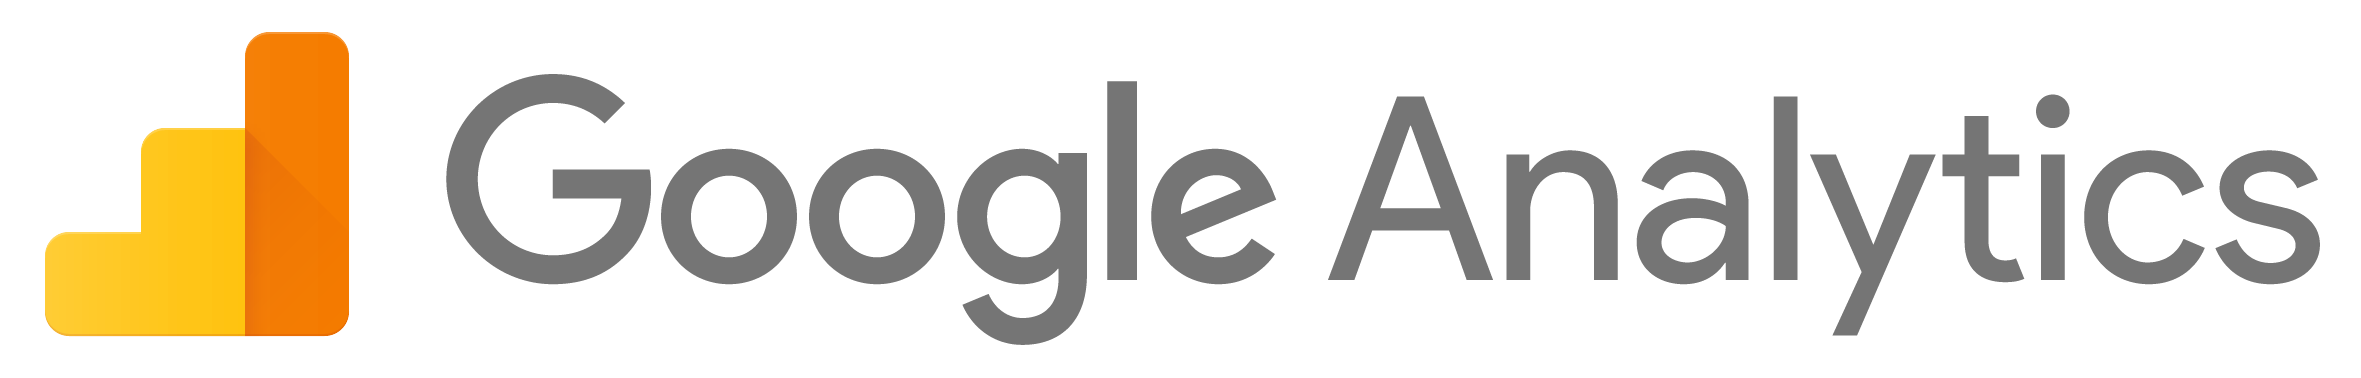 Google_Analytics_Logo_2015.png